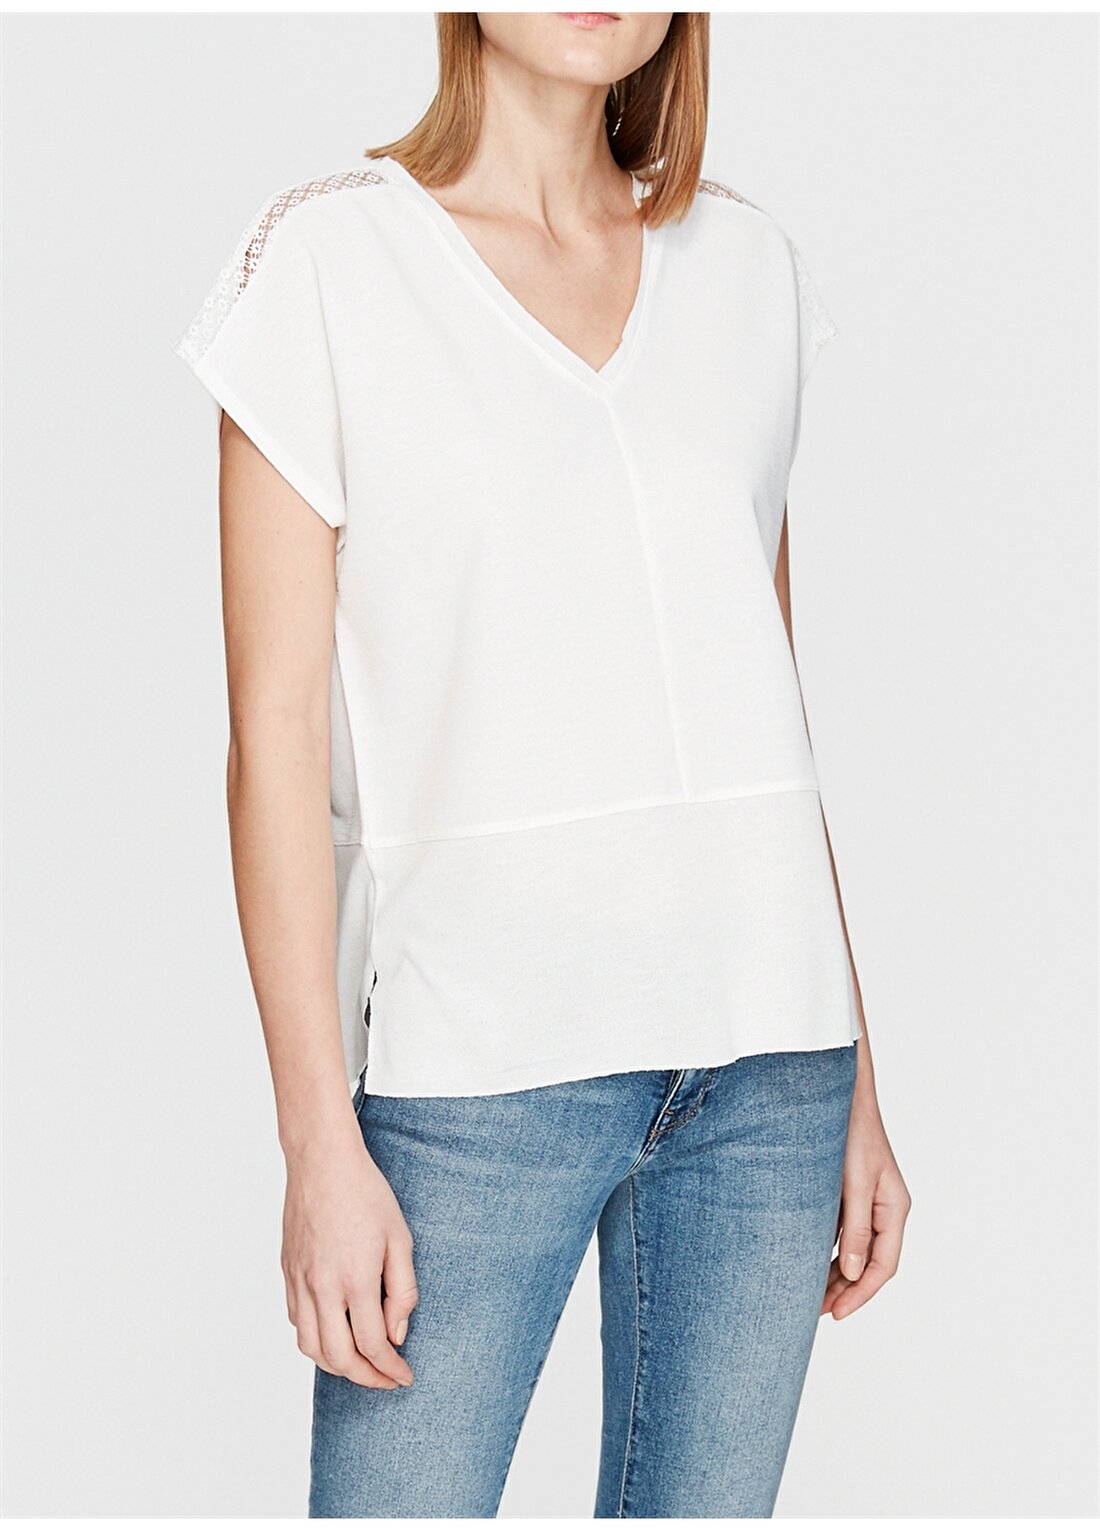 Mavi V Yaka Standart Düz Koyu Beyaz Kadın T-Shirt